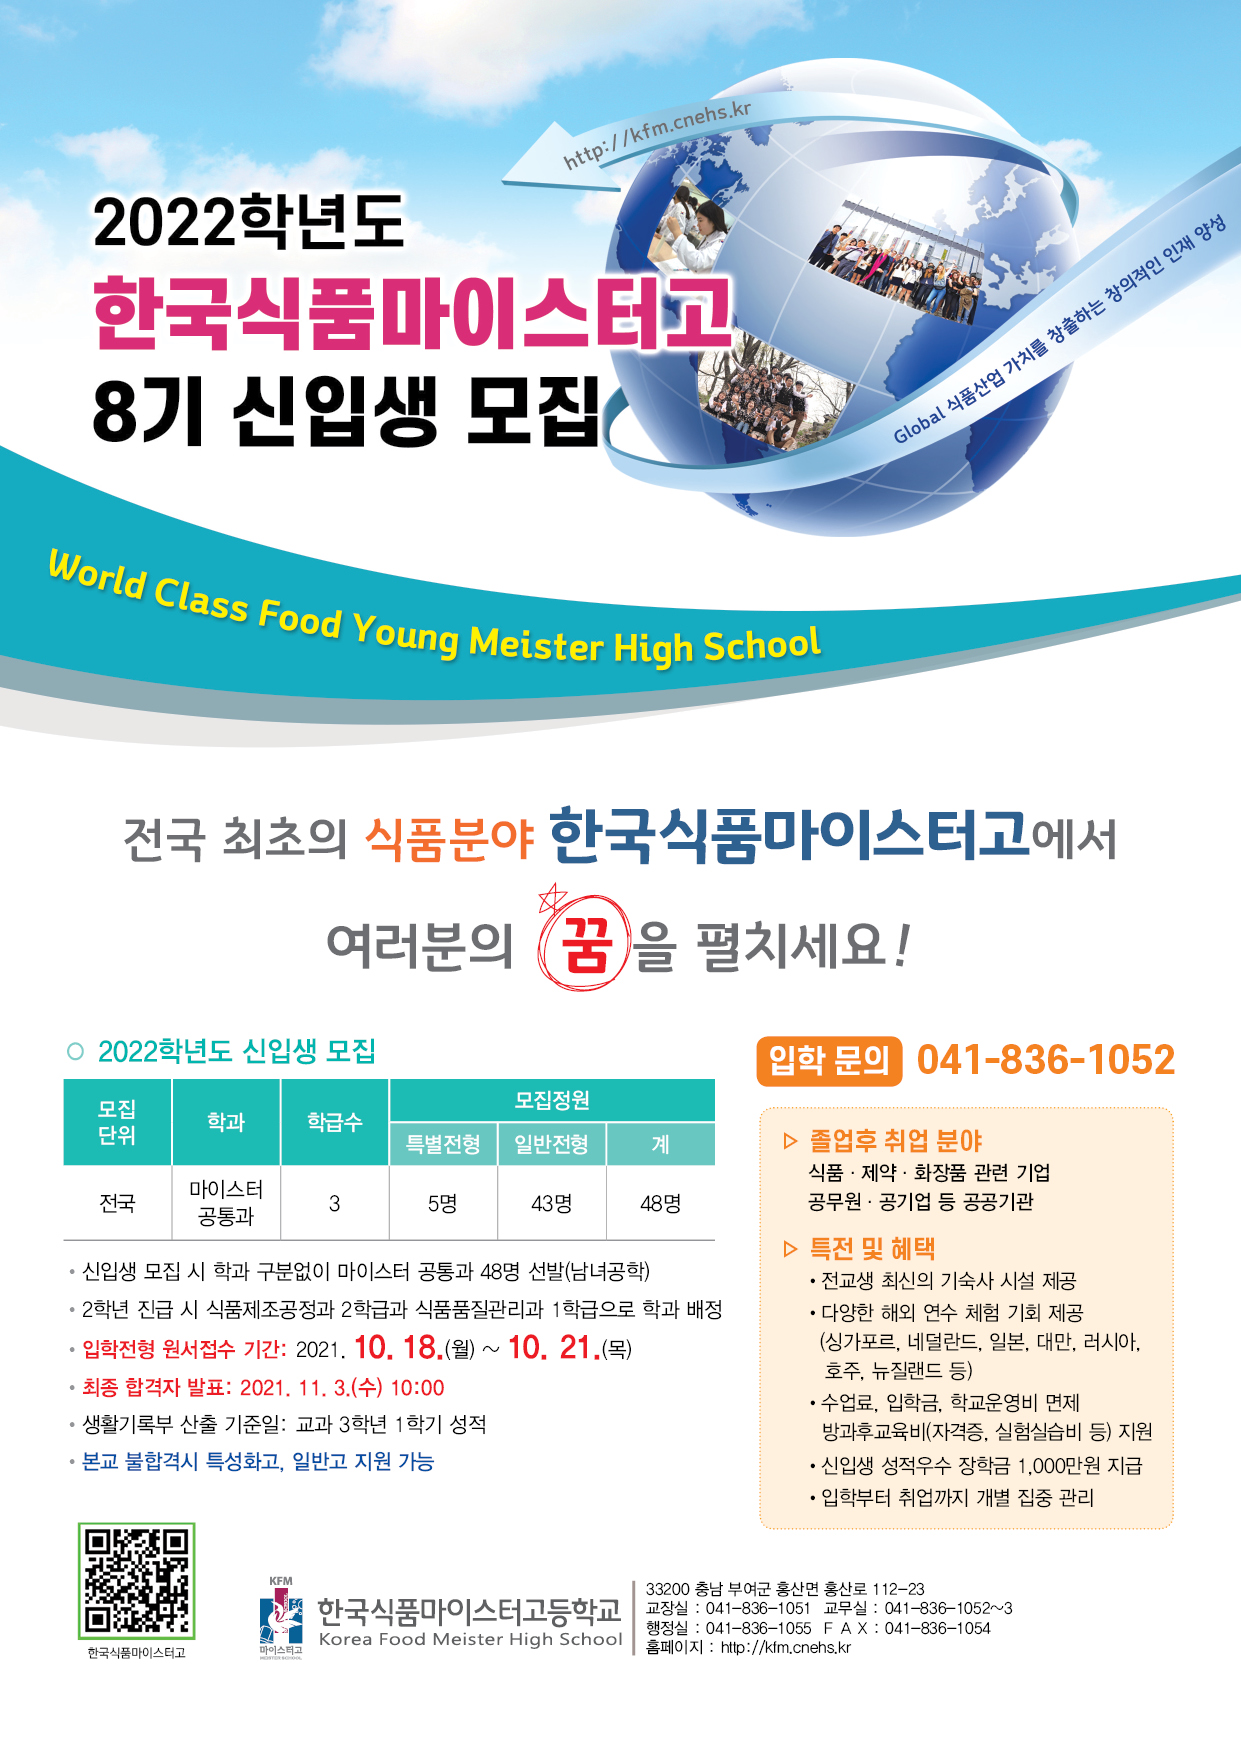 2022학년도 한국식품마이스터고등학교 신입생 홍보 포스터